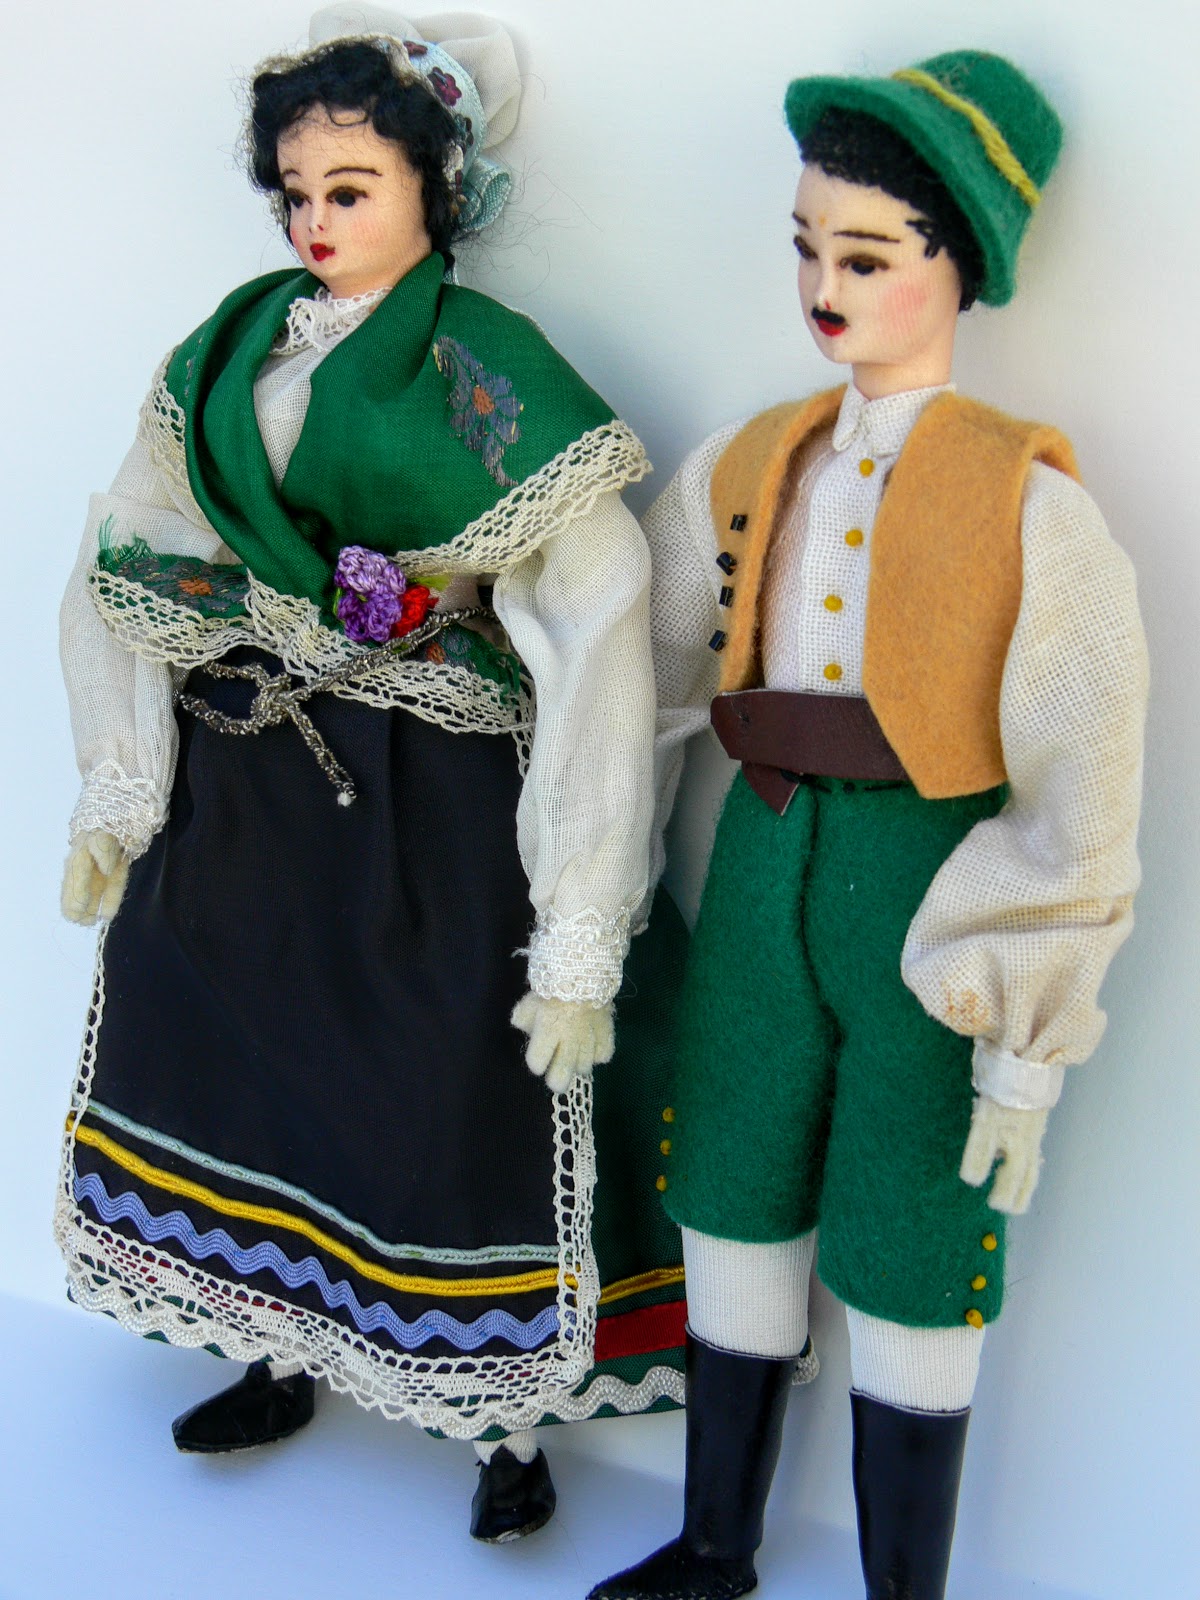 Montenegrin dolls